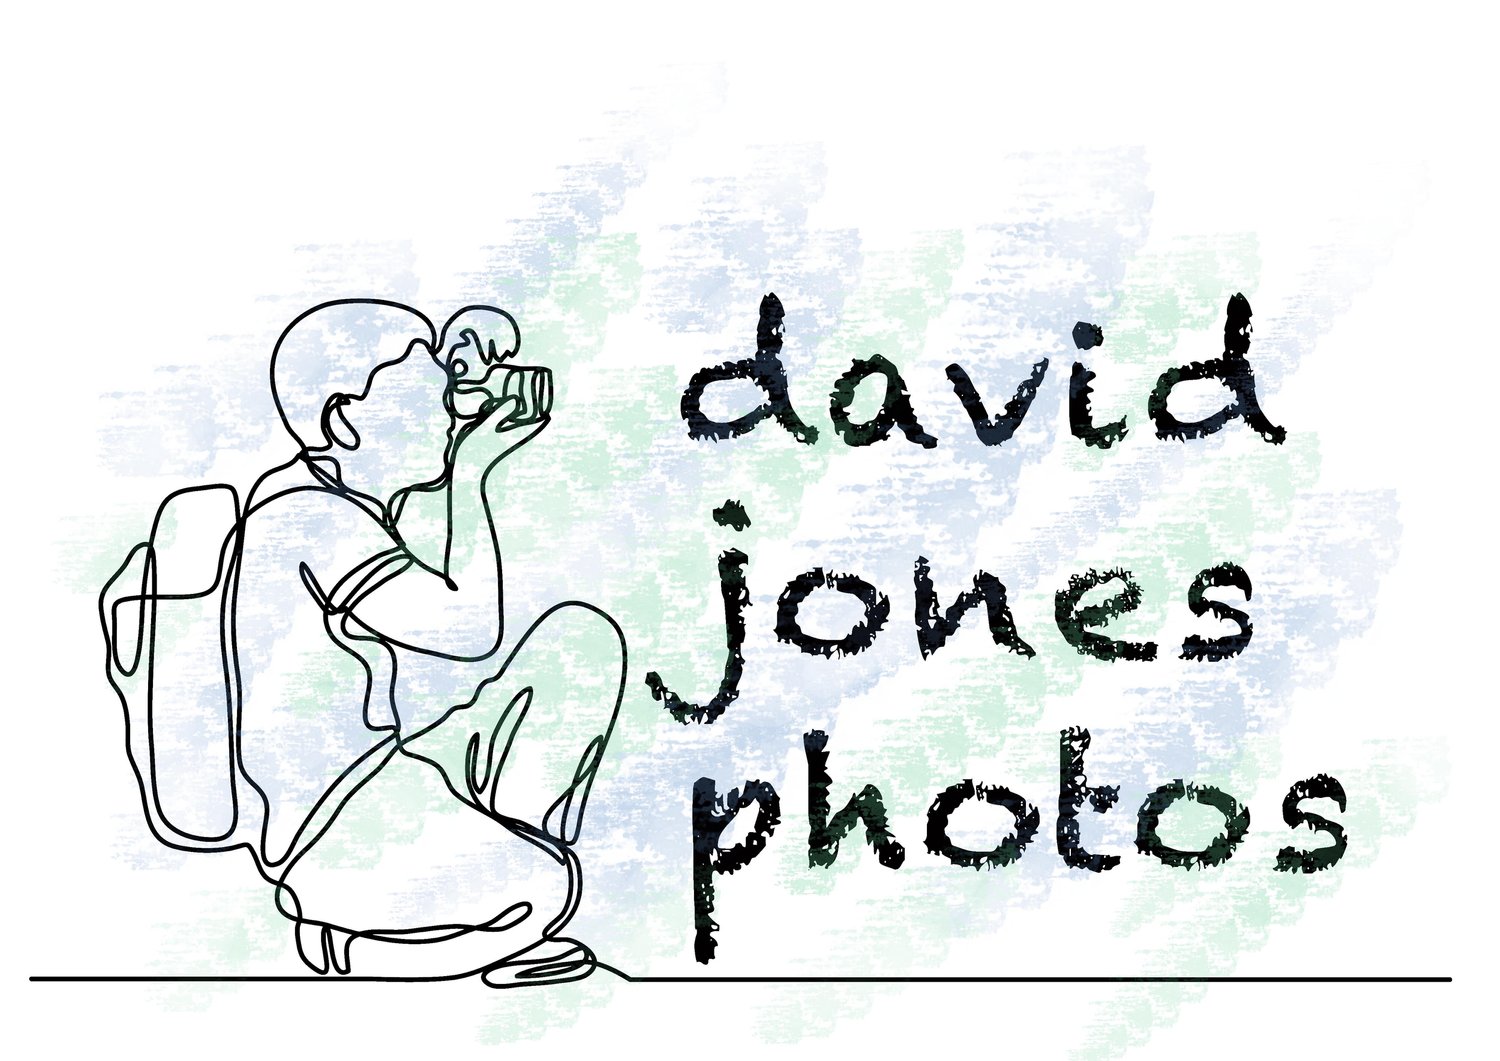 david jones photos